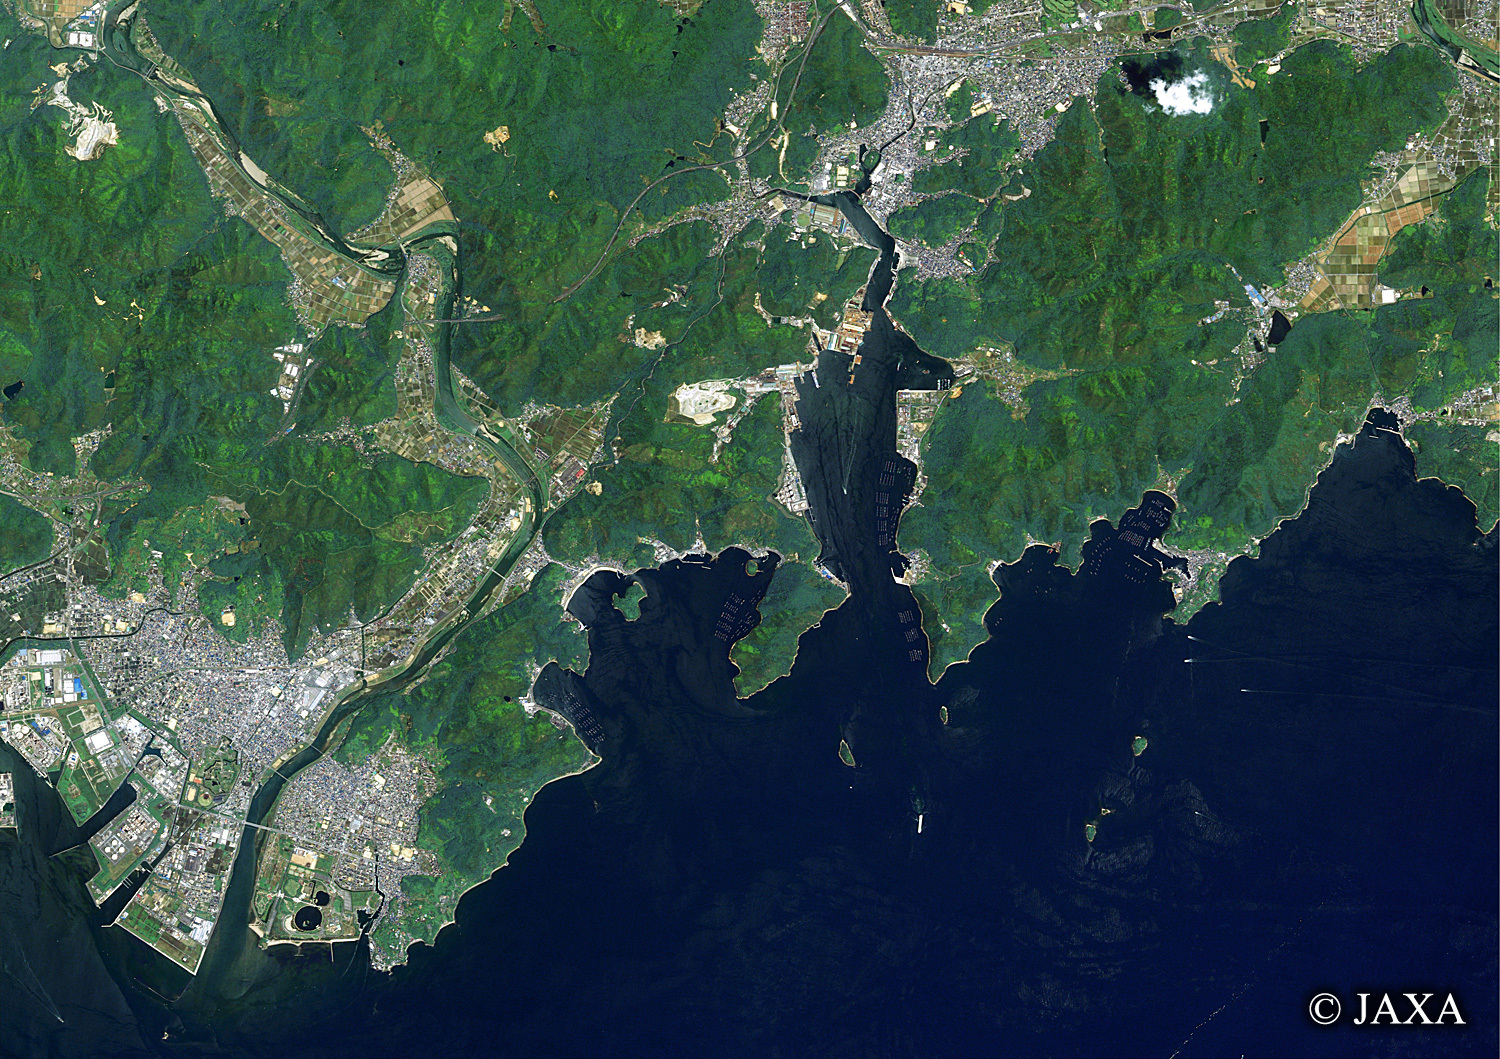 だいちから見た日本の都市 相生市周辺辺:衛星画像